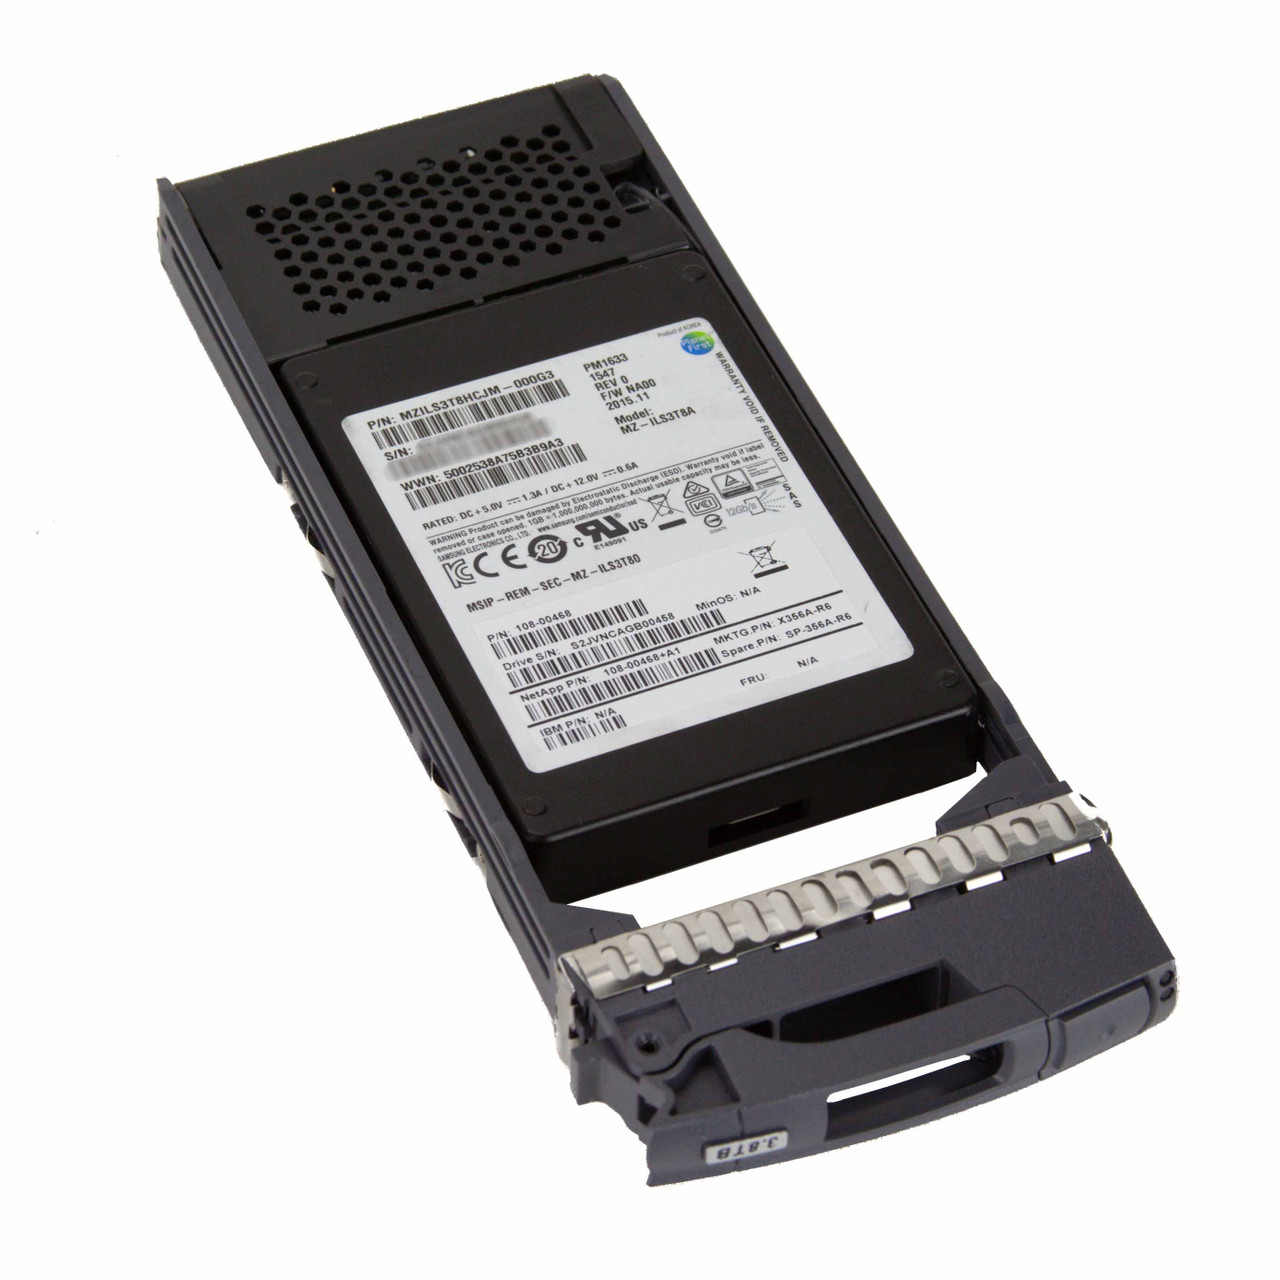 Подробное фото SSD 2,5" 3.8Tb SAS 12G Netapp X358A в салазках